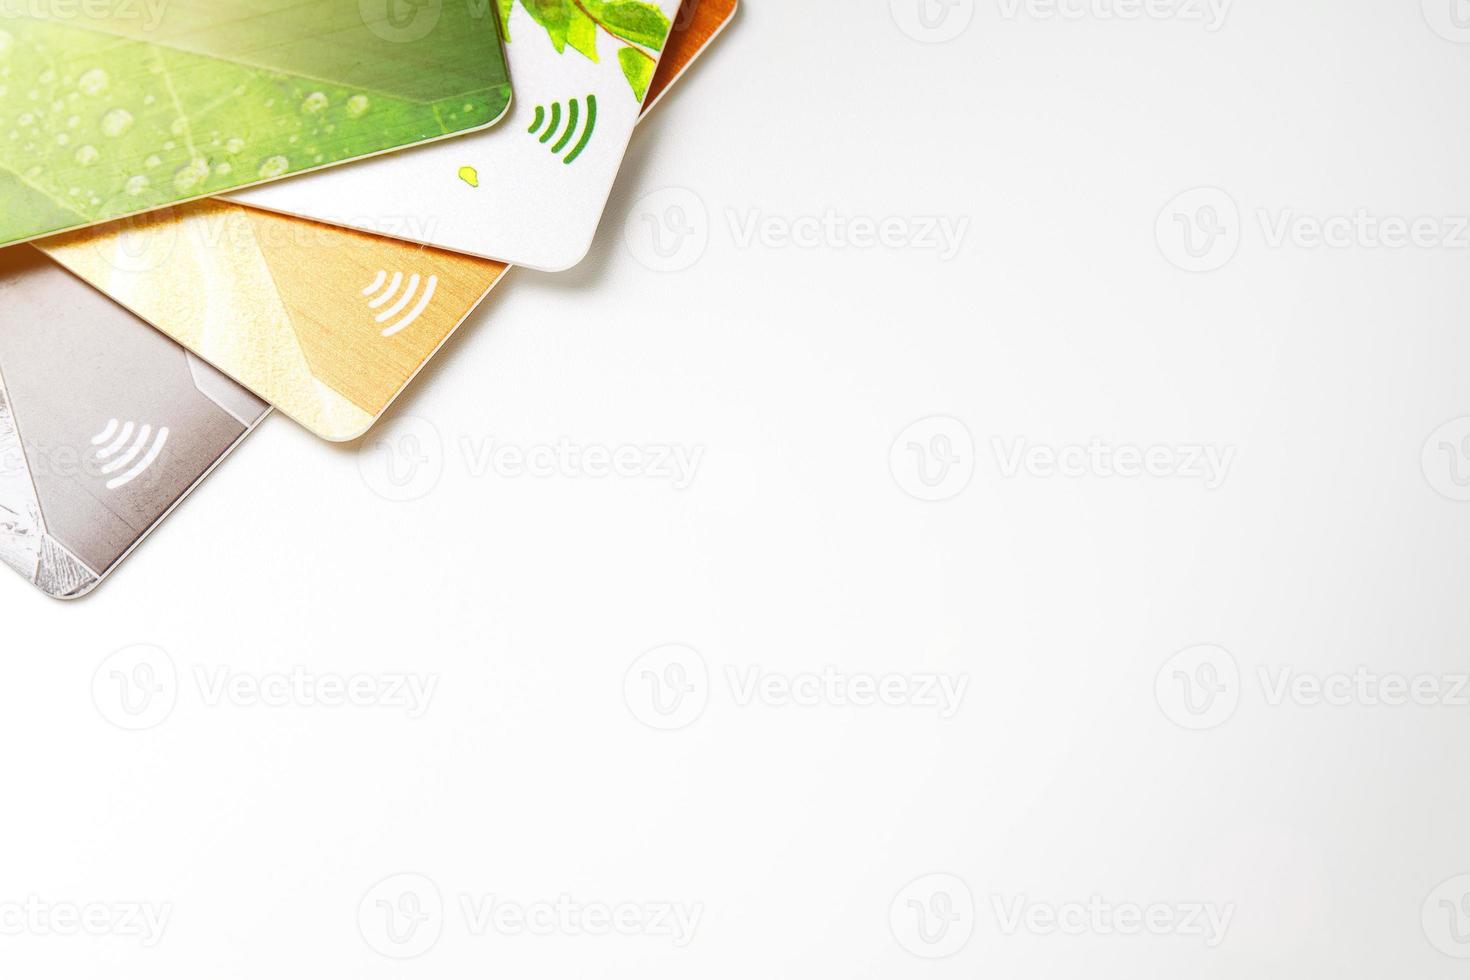 tarjetas de crédito con pago sin contacto. montón de tarjetas de crédito sobre fondo blanco aislado foto